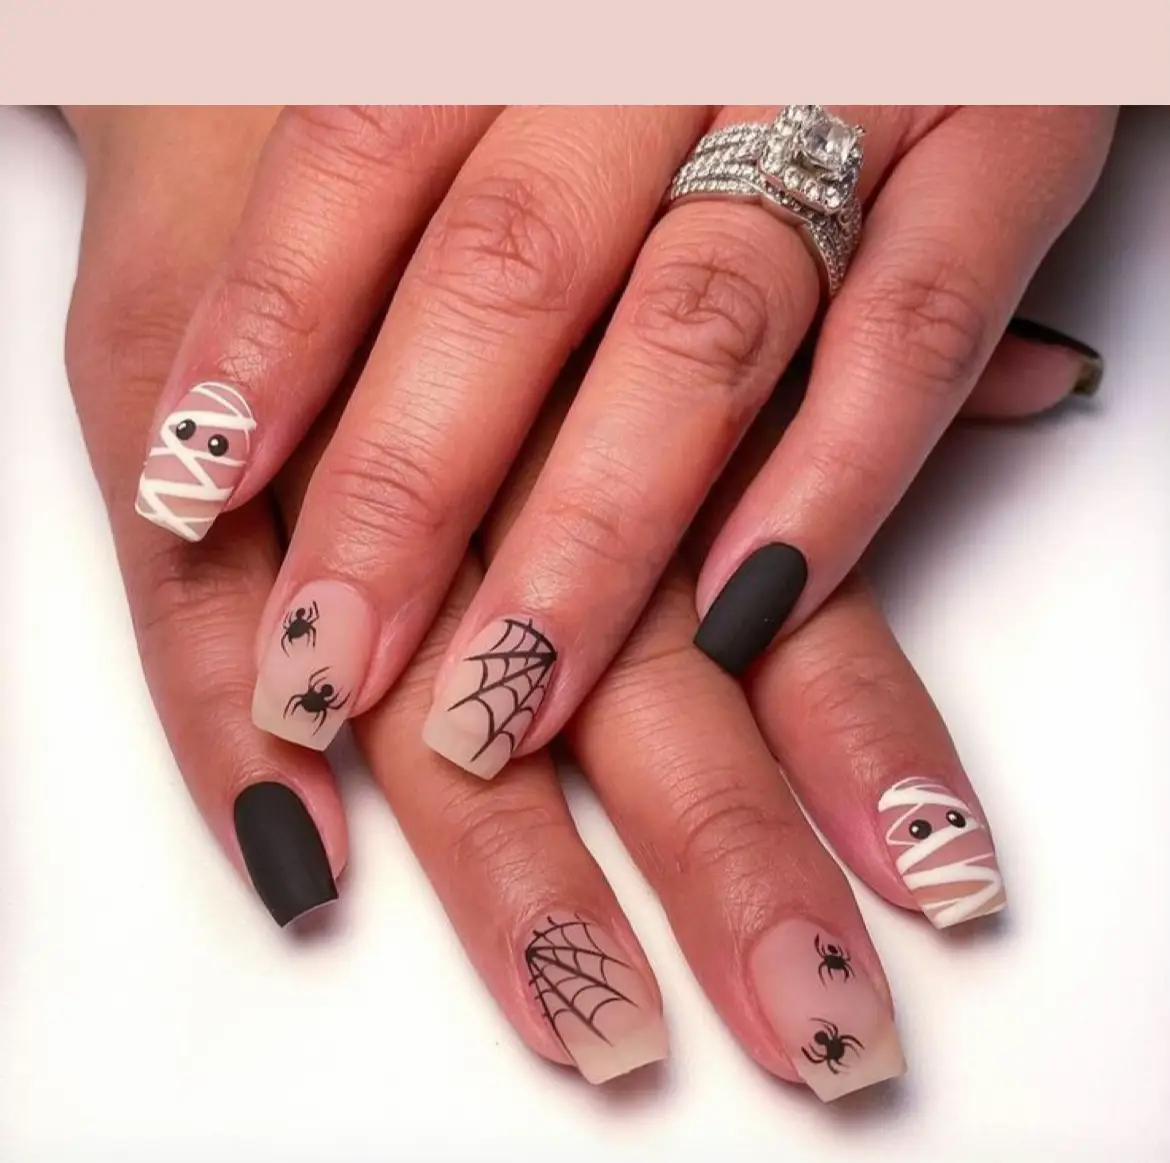 Nails By Anna - Red leopard print design😍🥵 #nails #nailart #nail